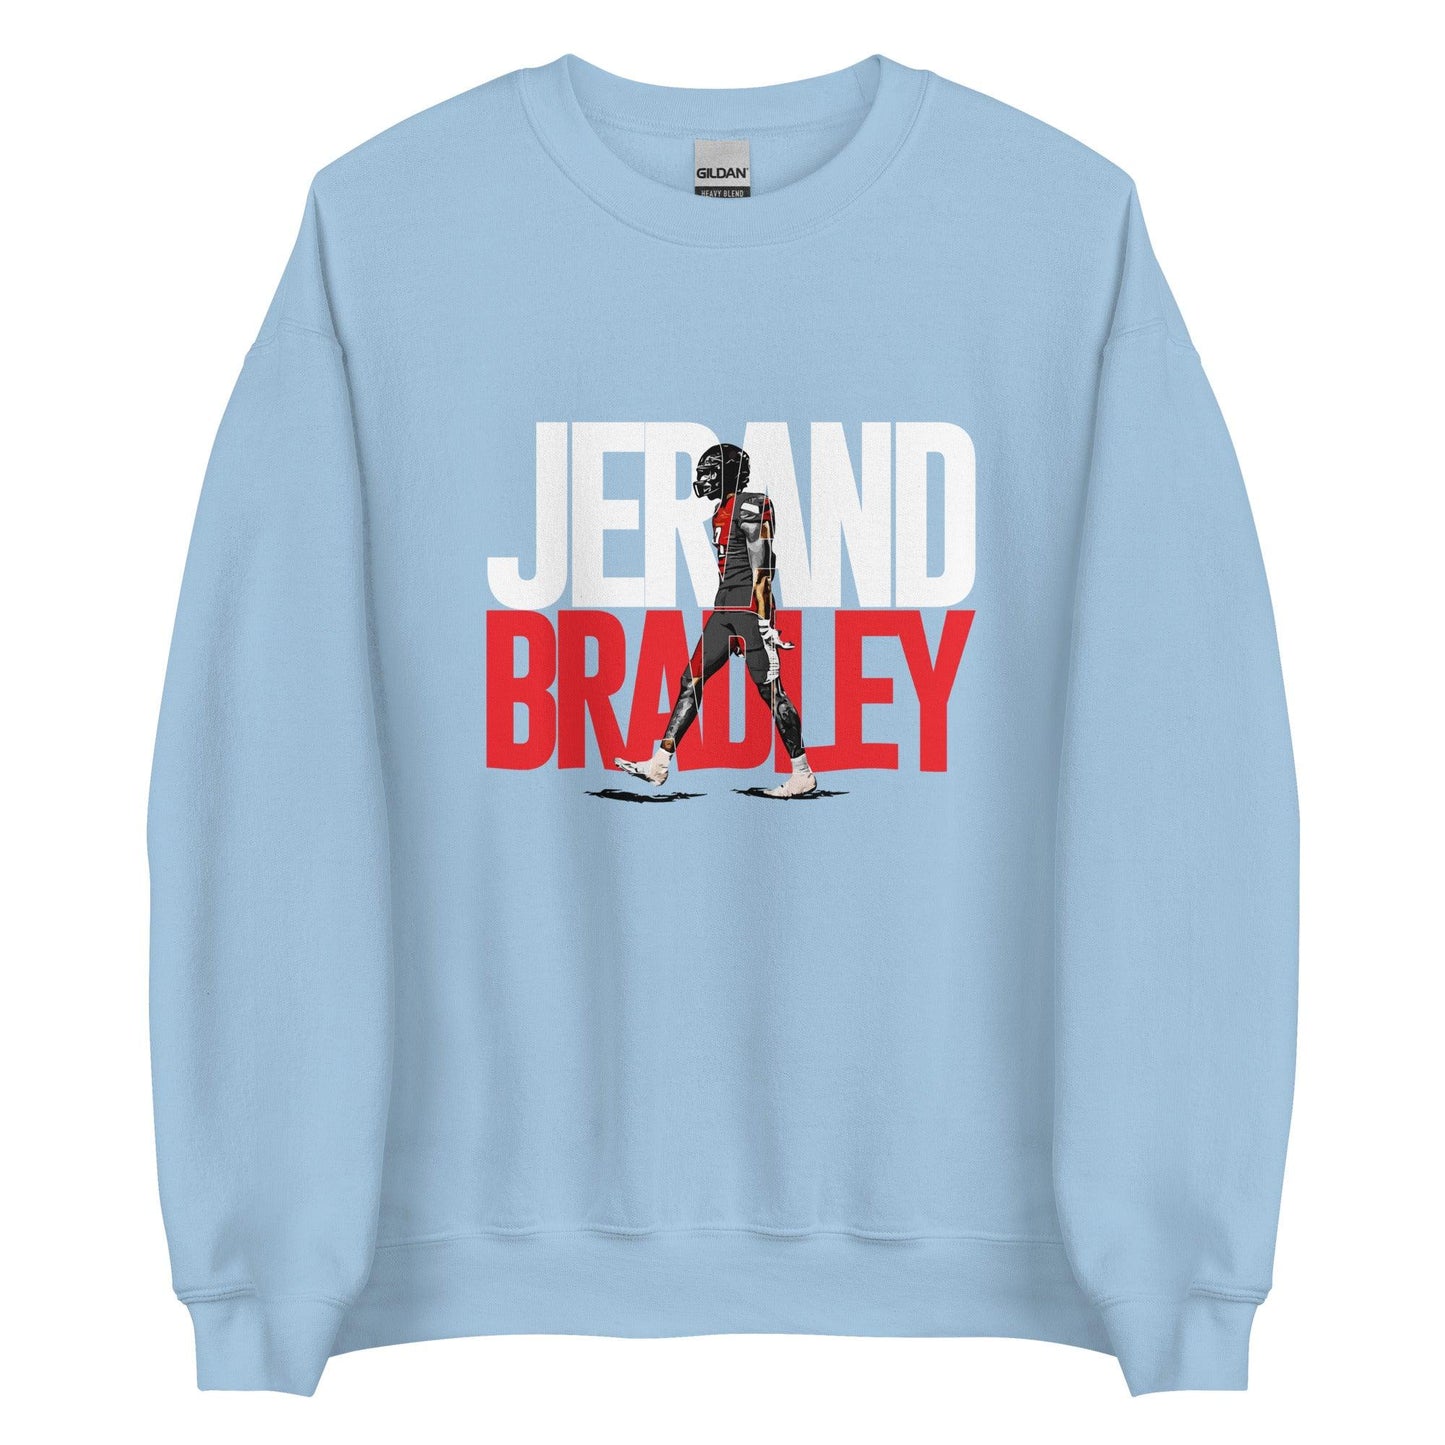 Jerand Bradley "Gameday" Sweatshirt - Fan Arch